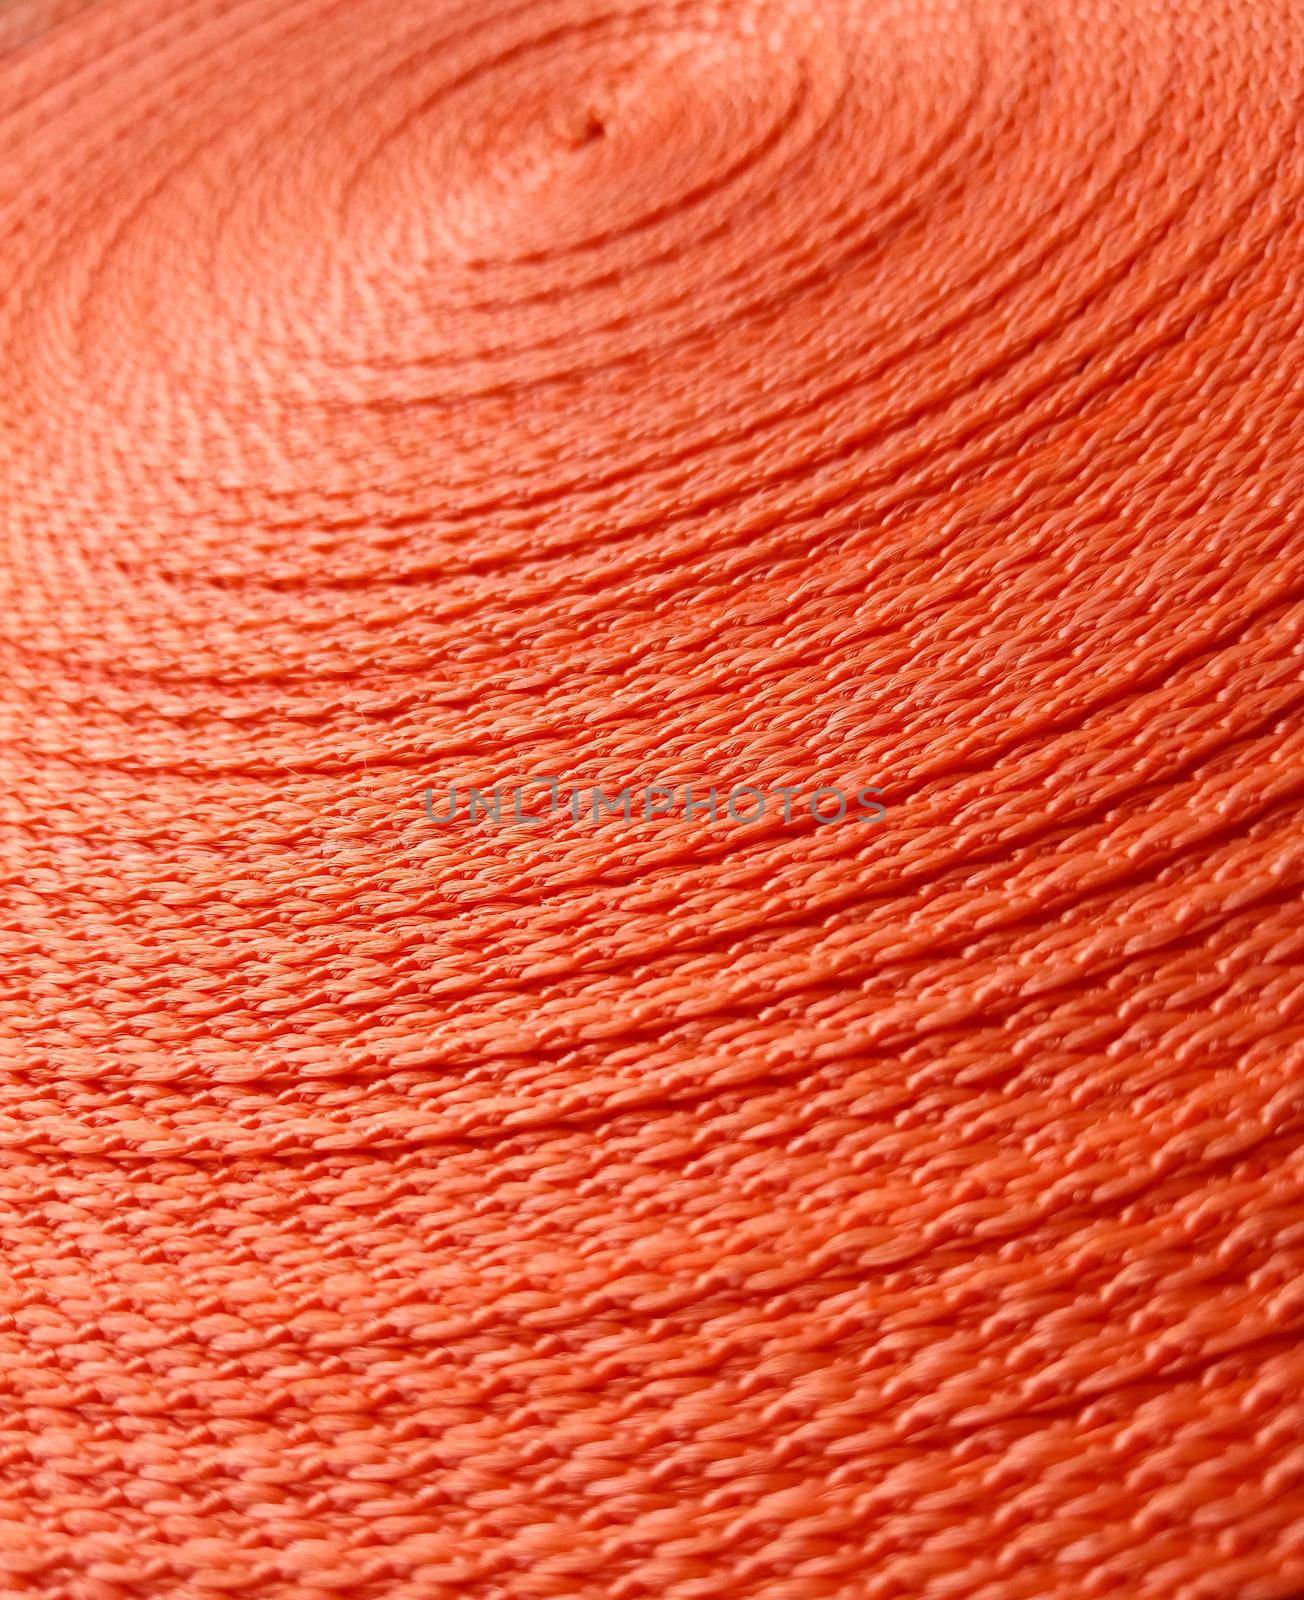 Orange abstract background. Circular pattern of orange sling.